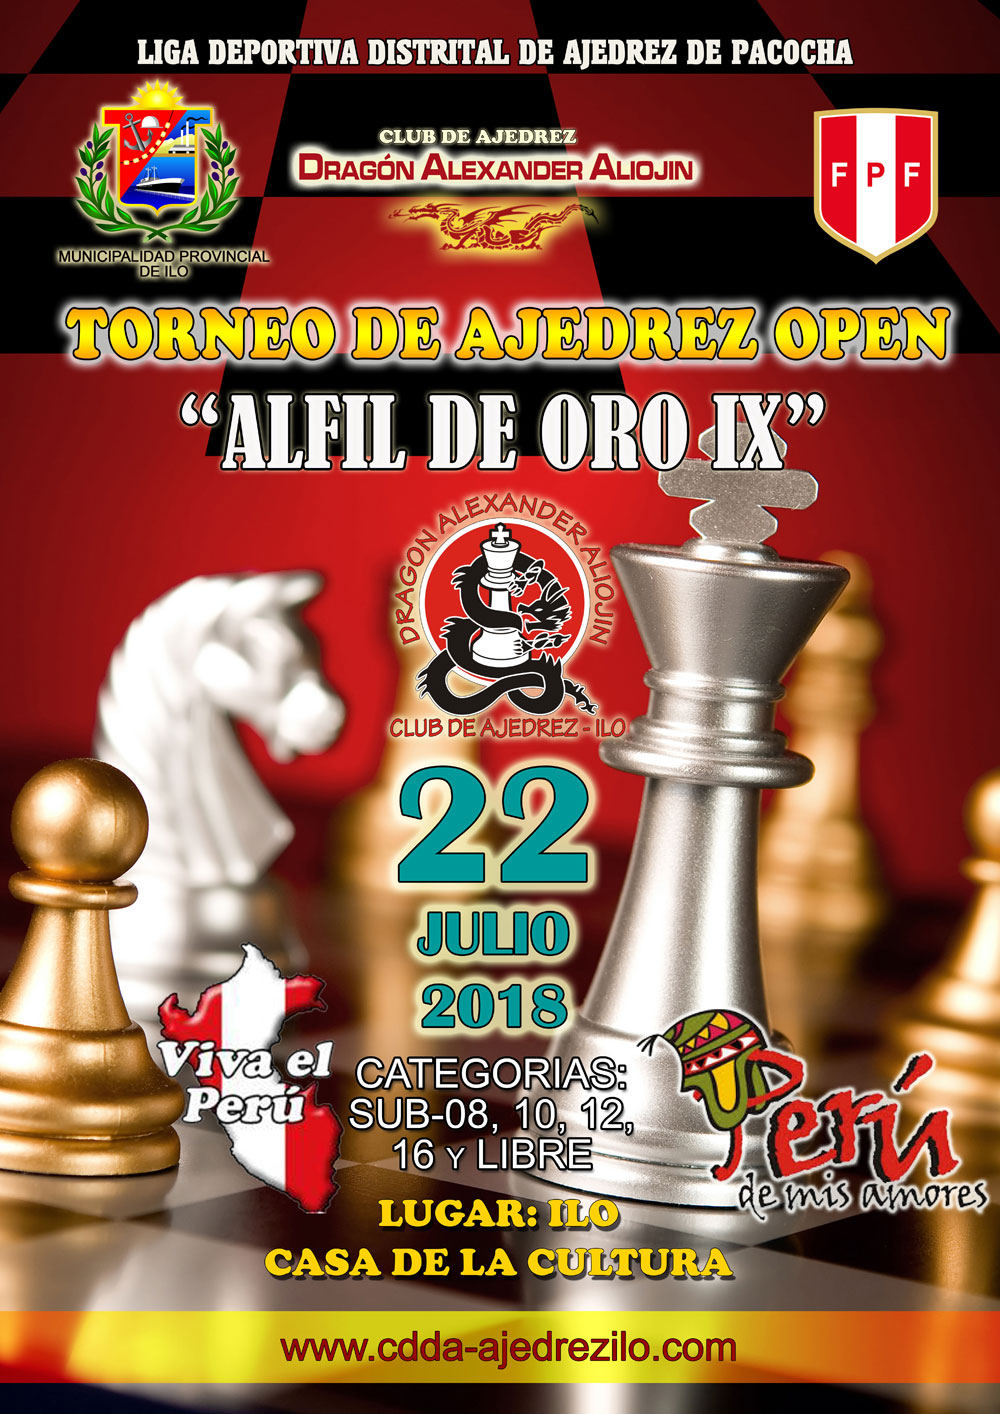 El ajedrez ¿es cultura o deporte? - Torre 64 - Ajedrez Peruano